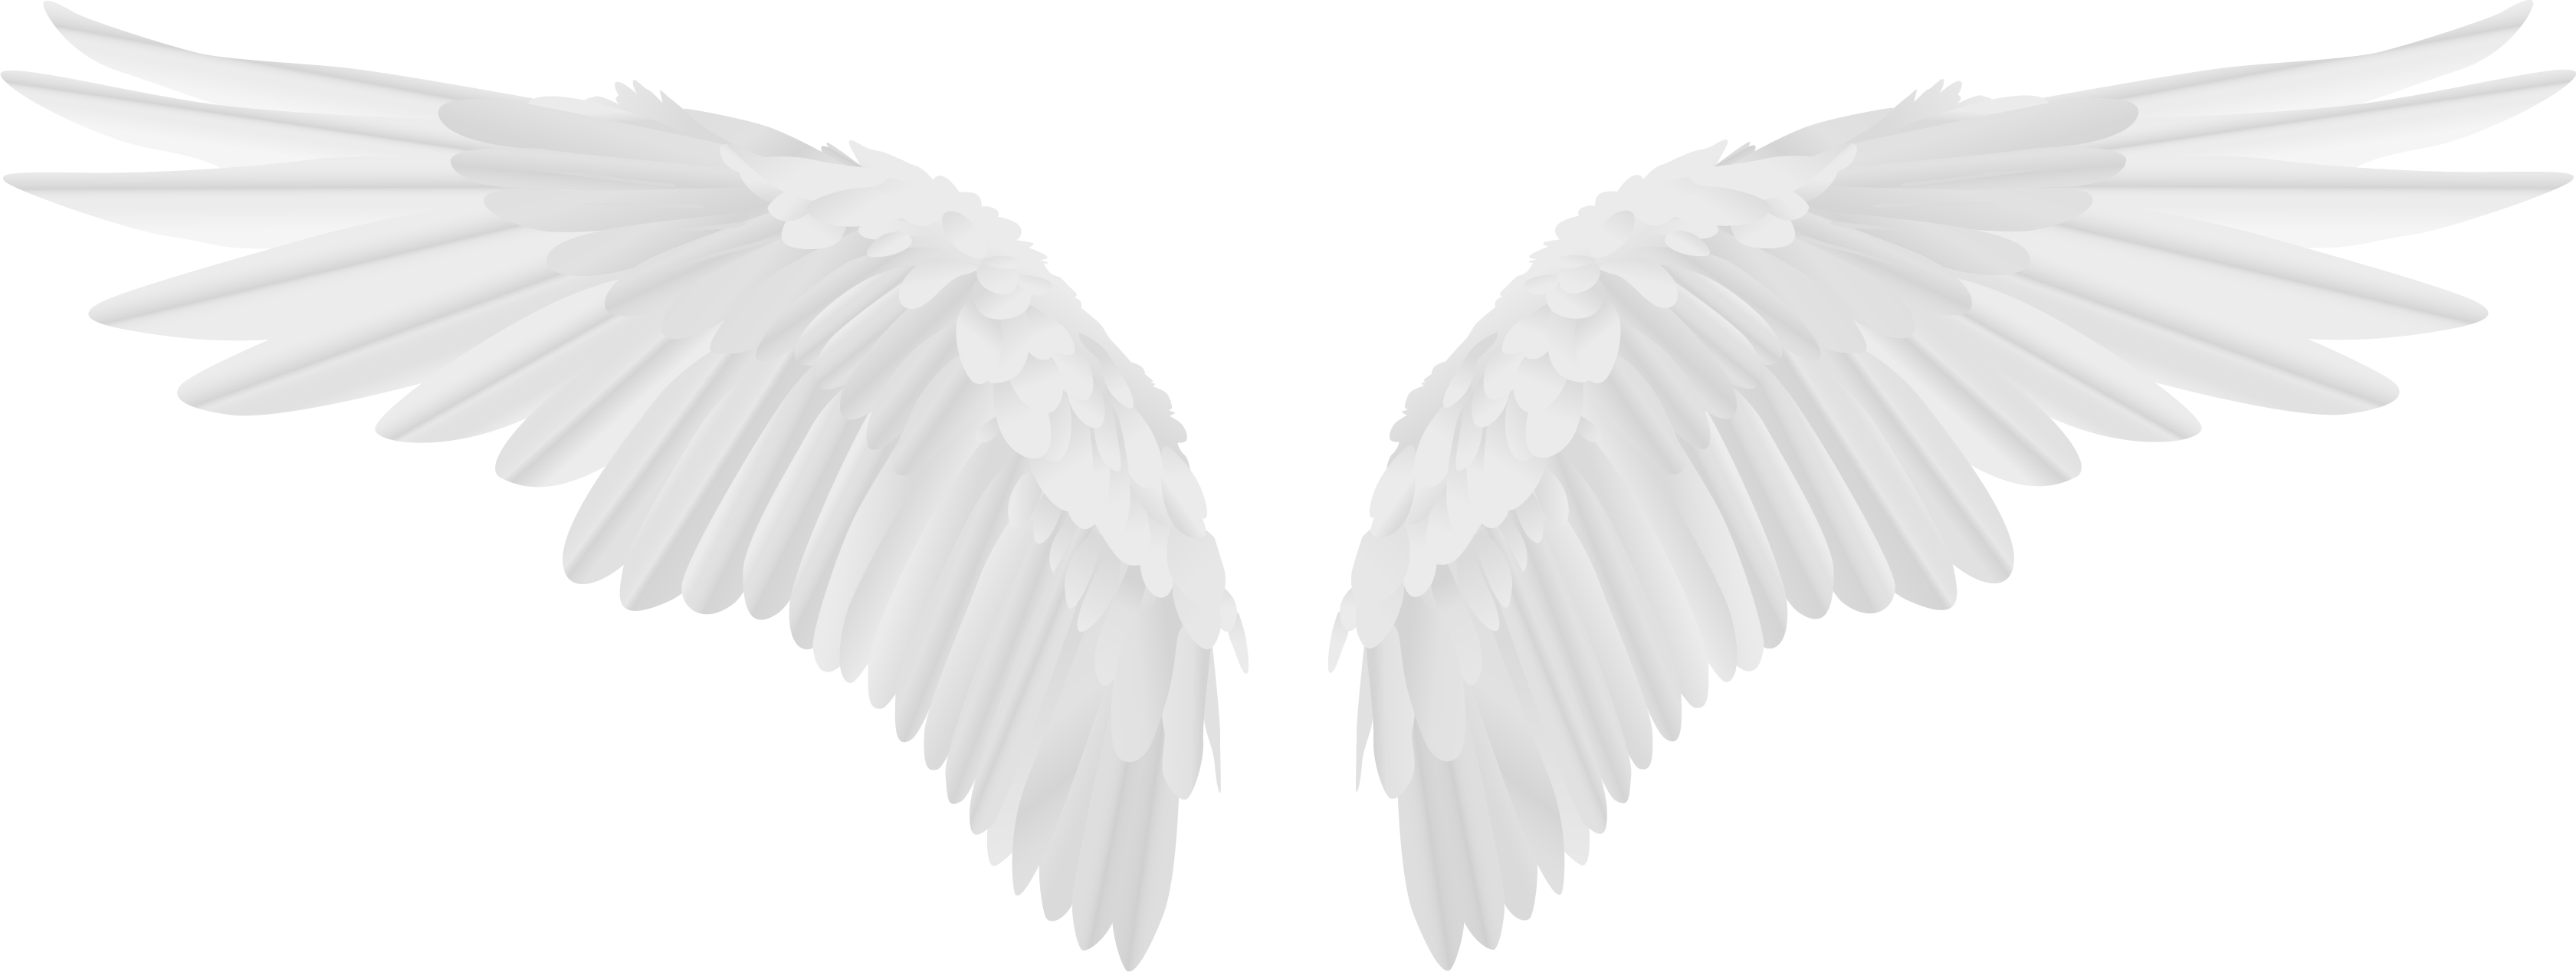 Легкие крылья ангела отображают превосходство духовного мира и напоминают о его всепроникающем благоденствии.